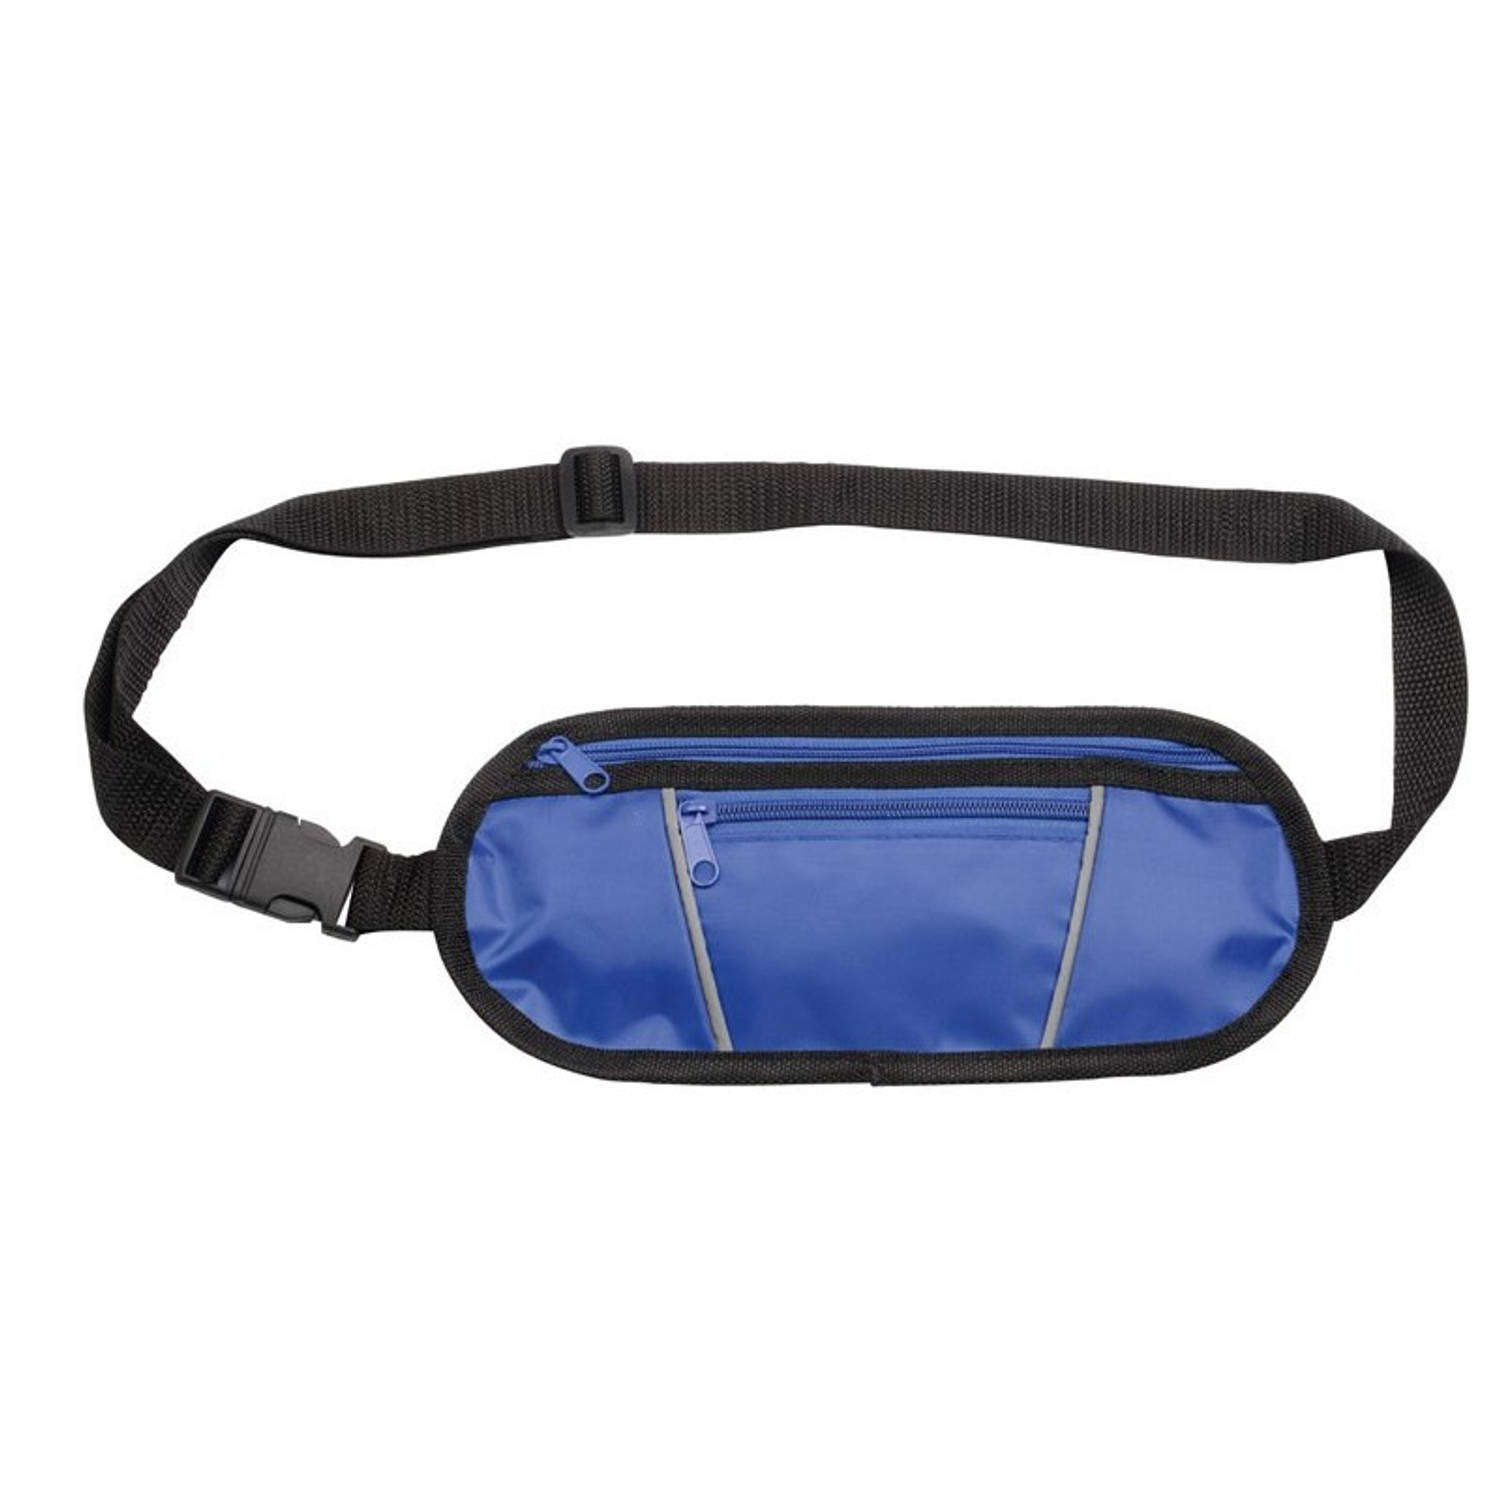 Blauw Heuptasje-buideltasje 28 X 12 Cm Reflecterend Blauwe Heuptassen-fanny Pack Voor Op Reis-onderw